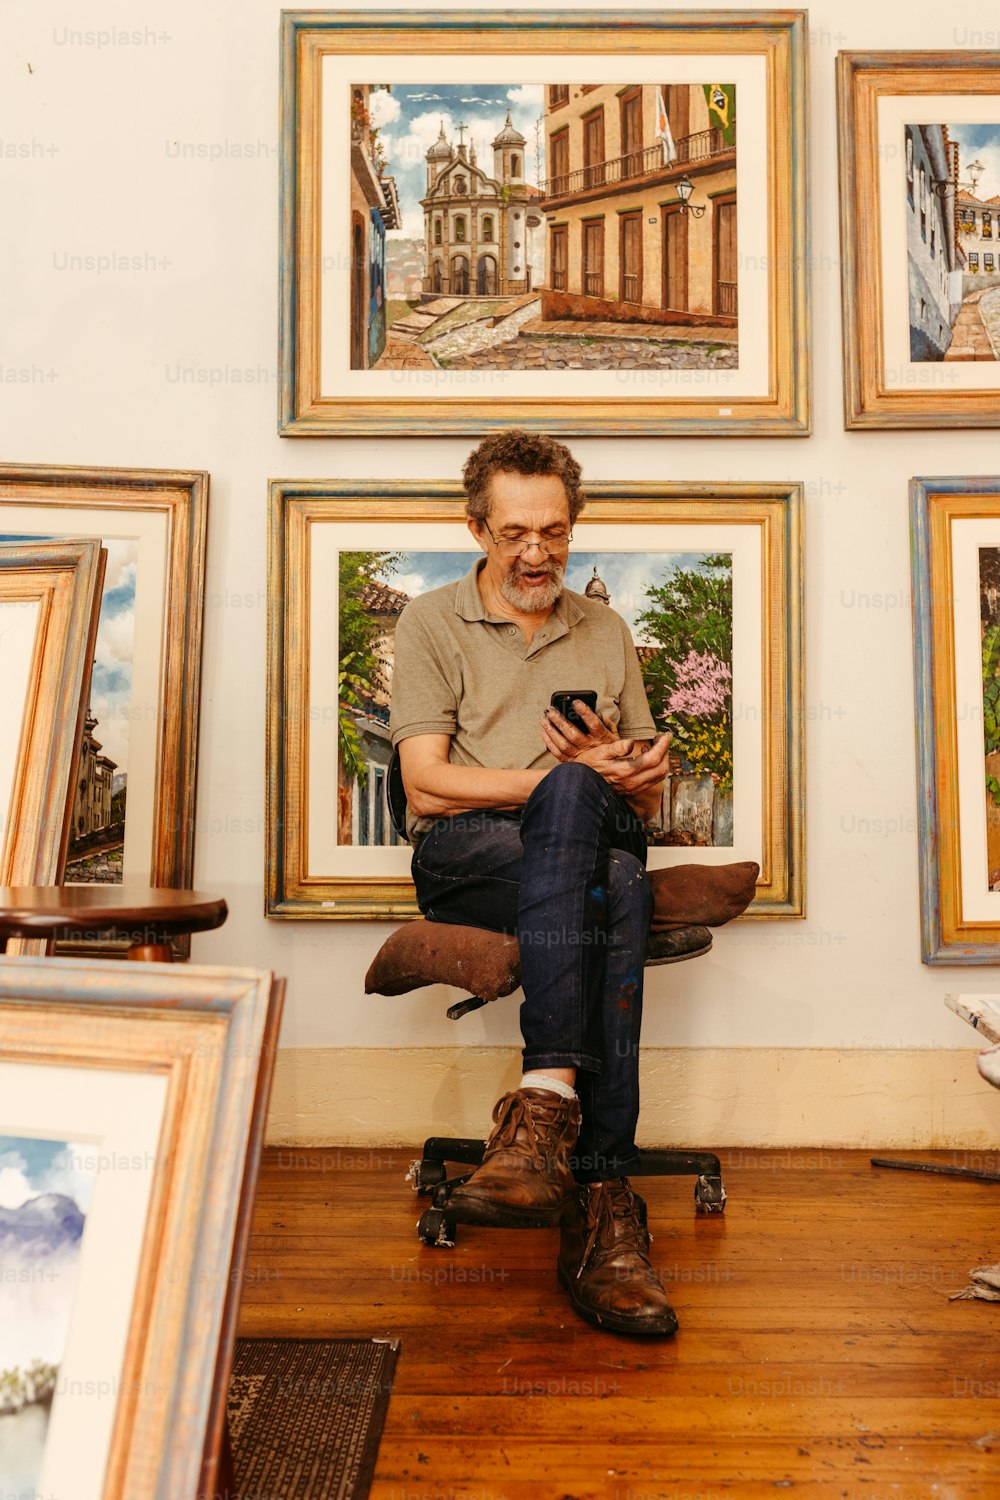 Un hombre sentado en una silla frente a una pared de pinturas